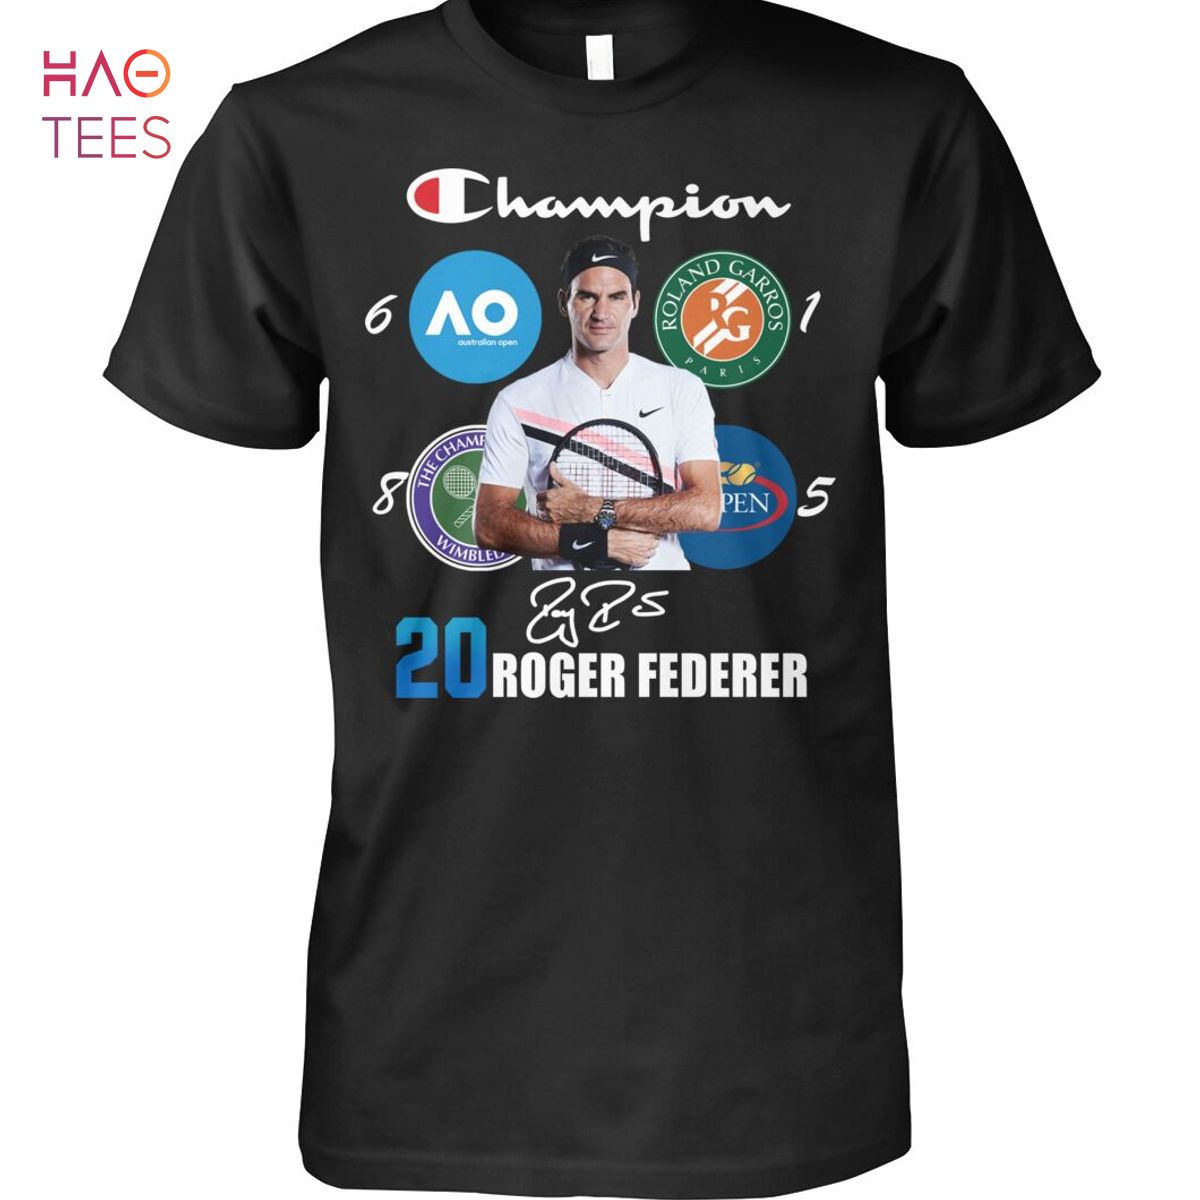 Champion 20 Roger Federer Shirt